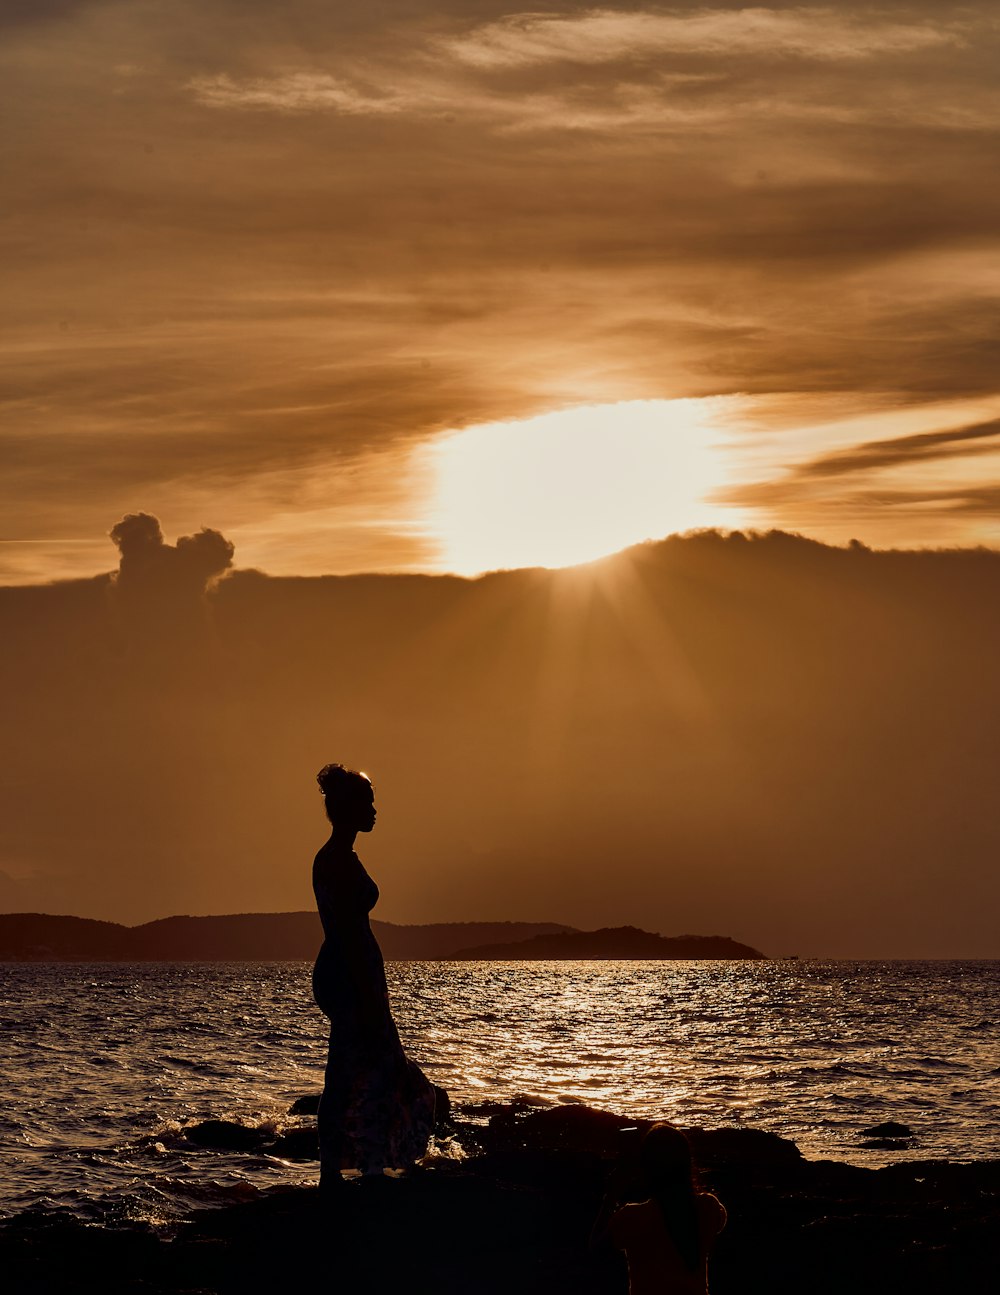 Una donna in piedi su una spiaggia rocciosa vicino all'oceano